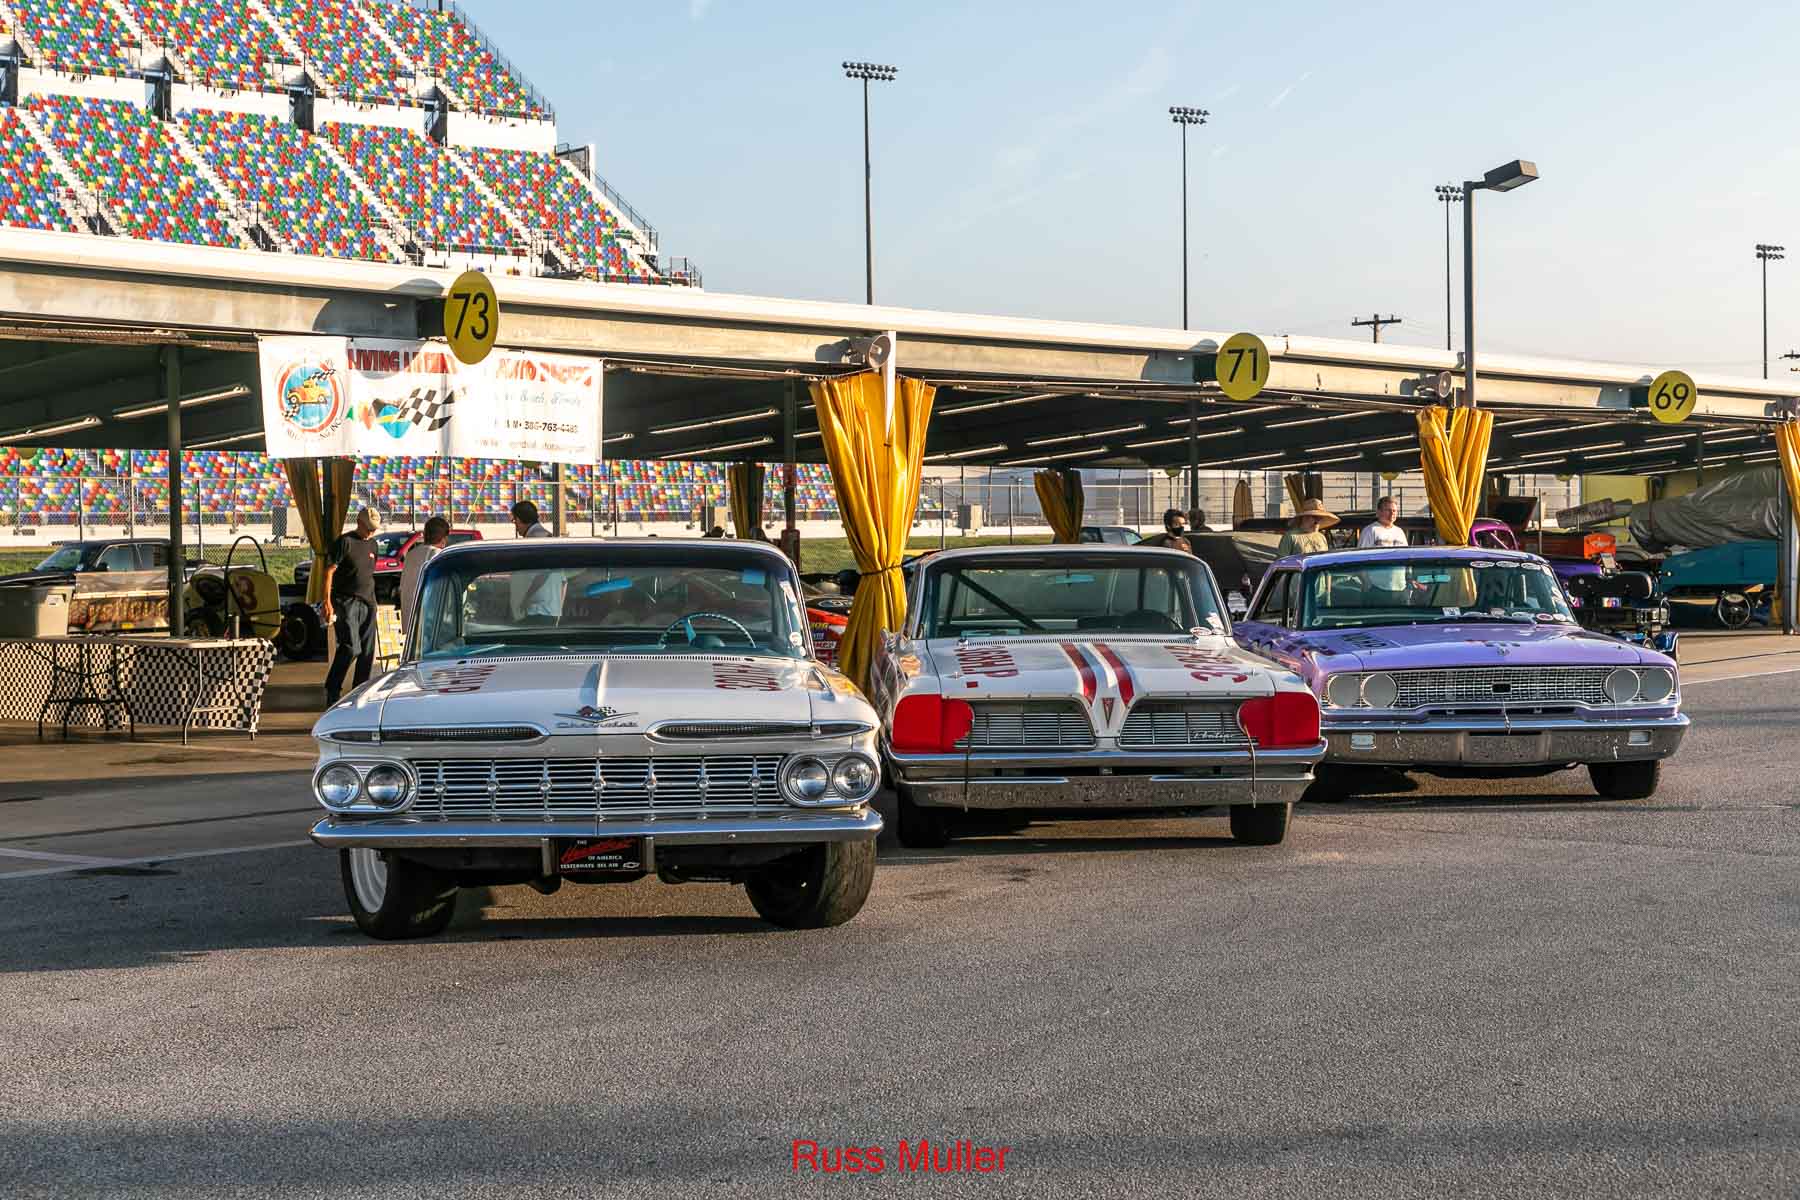 Daytona Car Show 2021